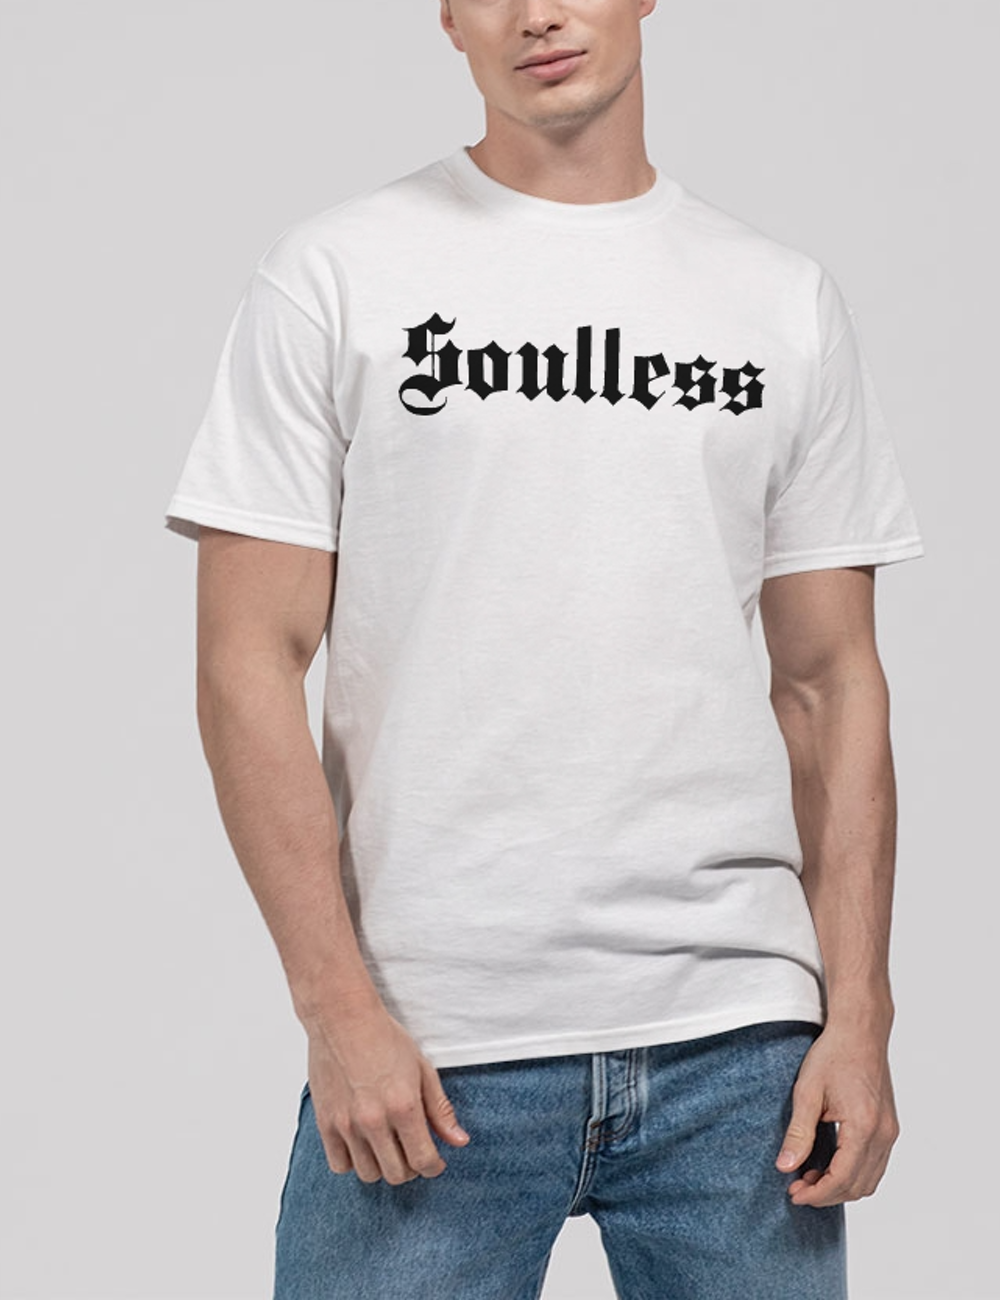 Soulless Men's Classic T-Shirt OniTakai